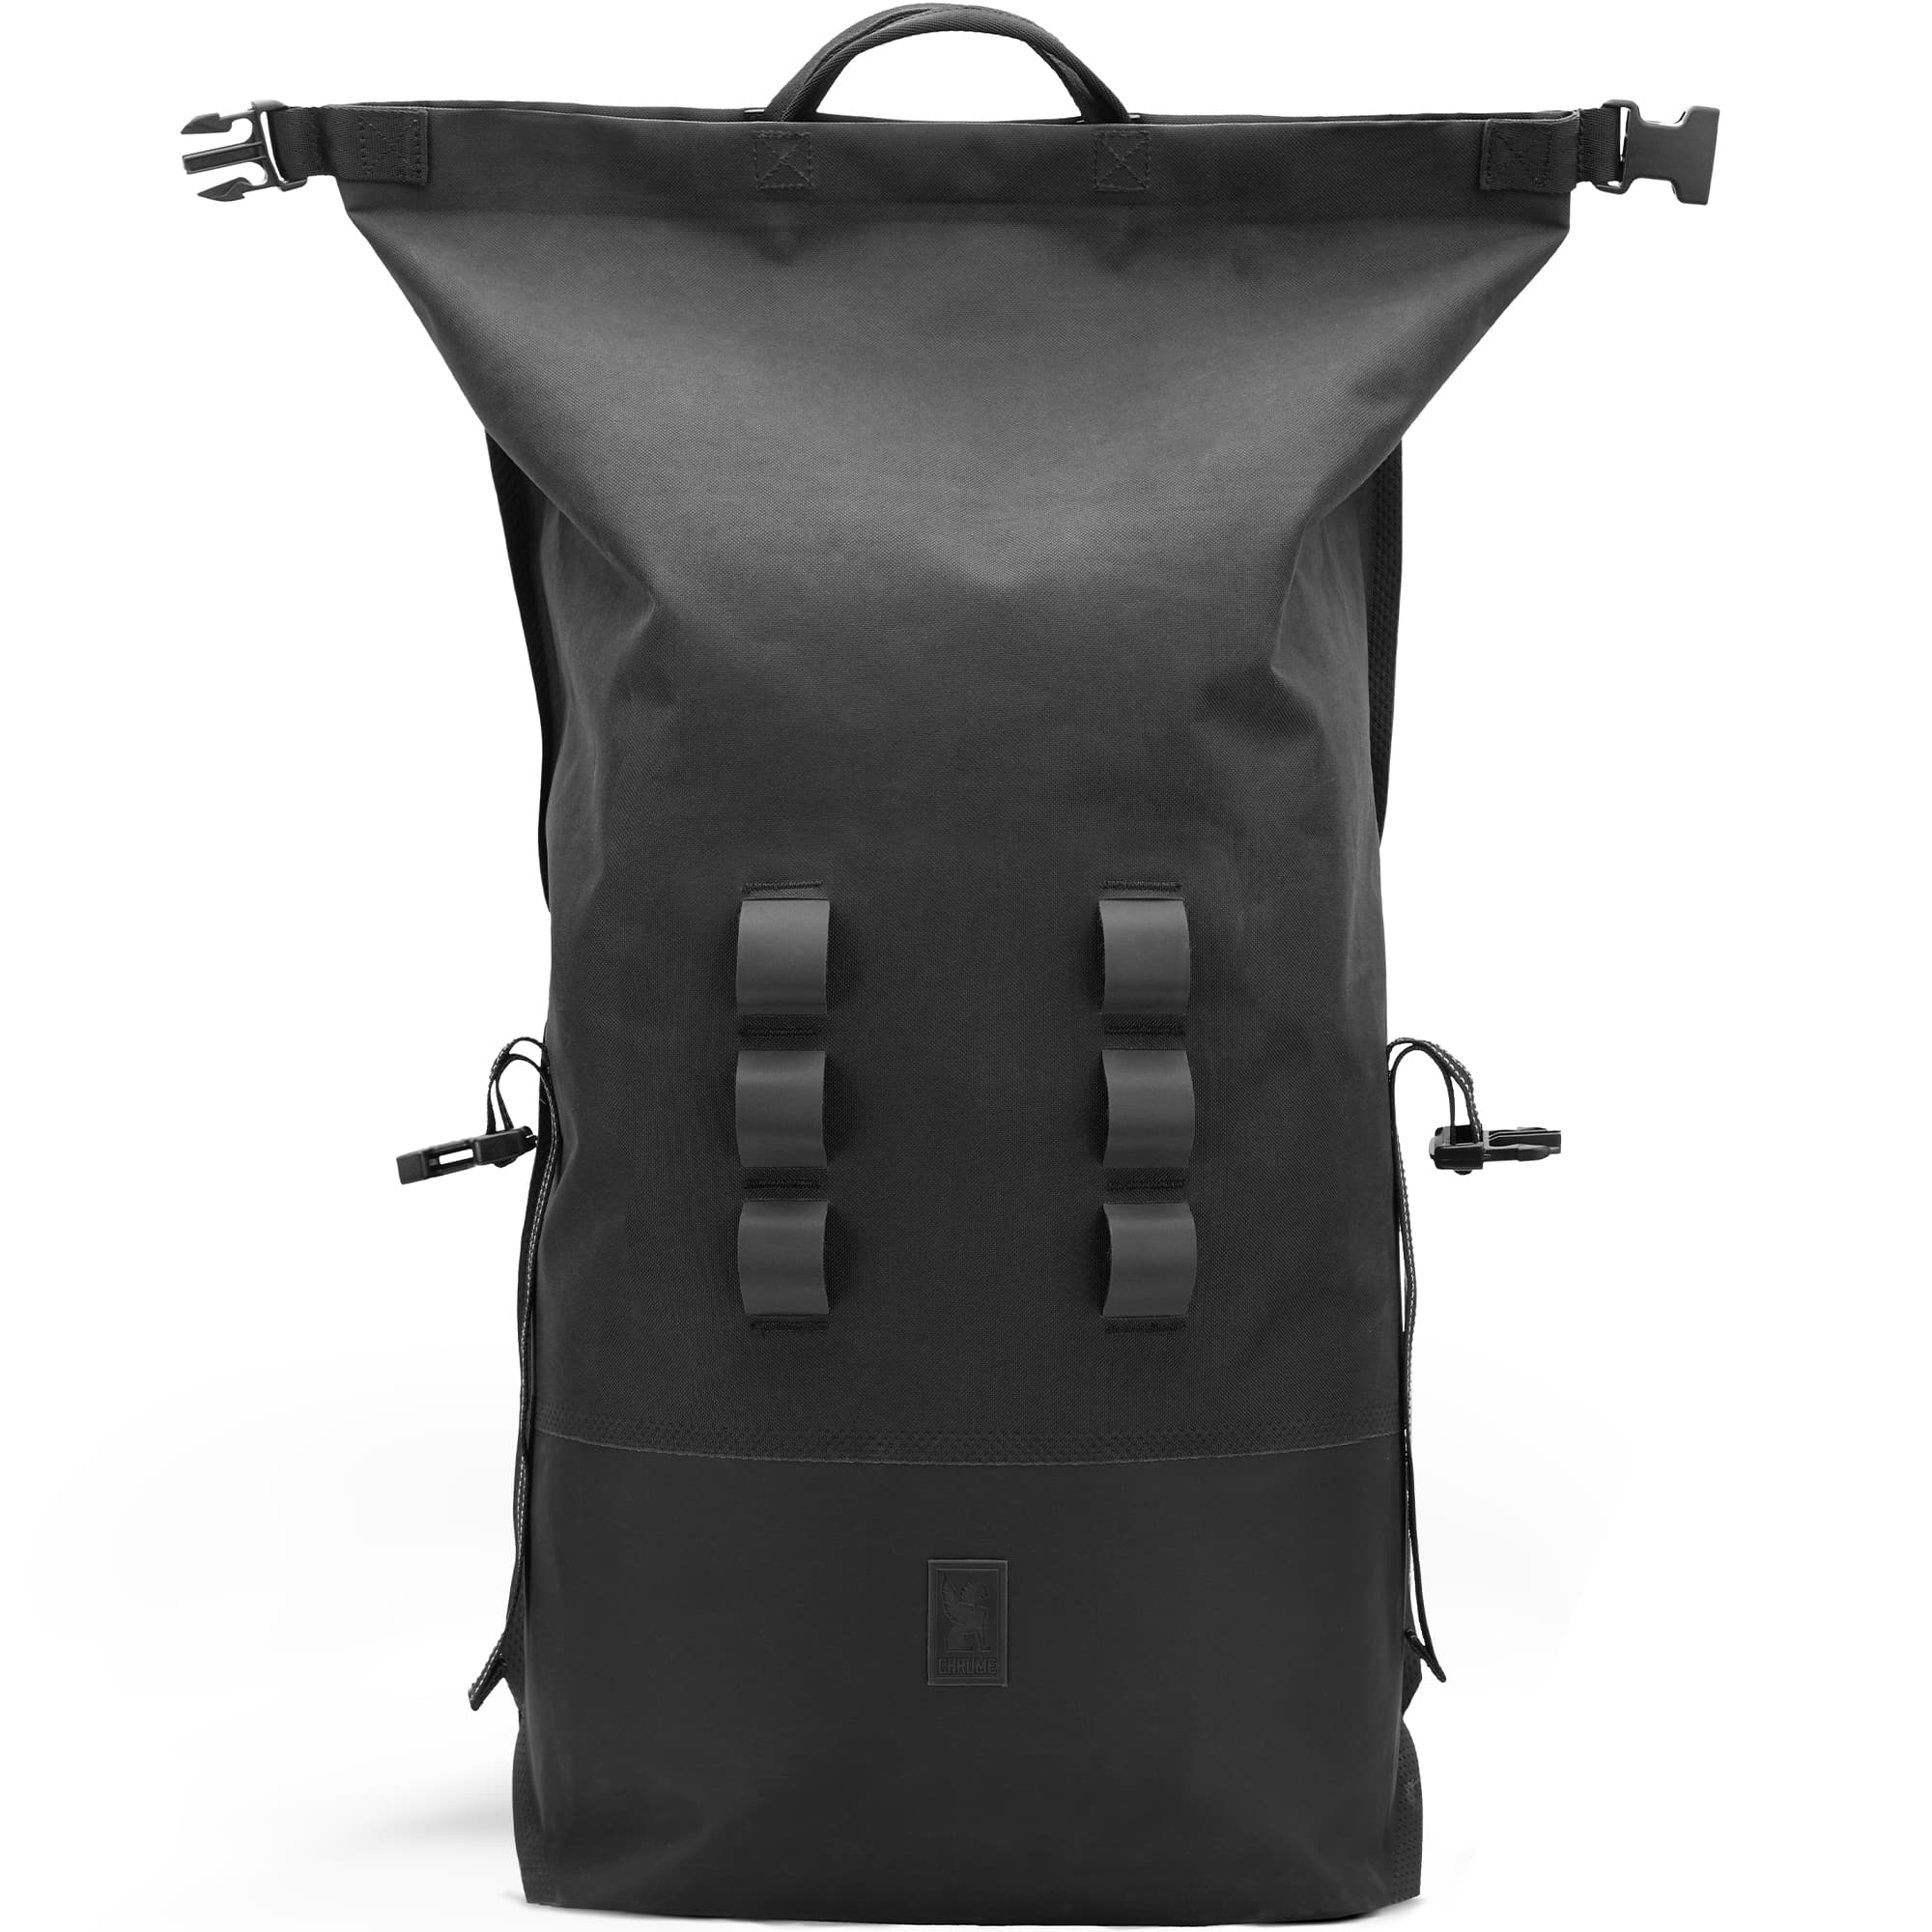 Waterproof 30L rolltop backpack in black unrolled #color_black